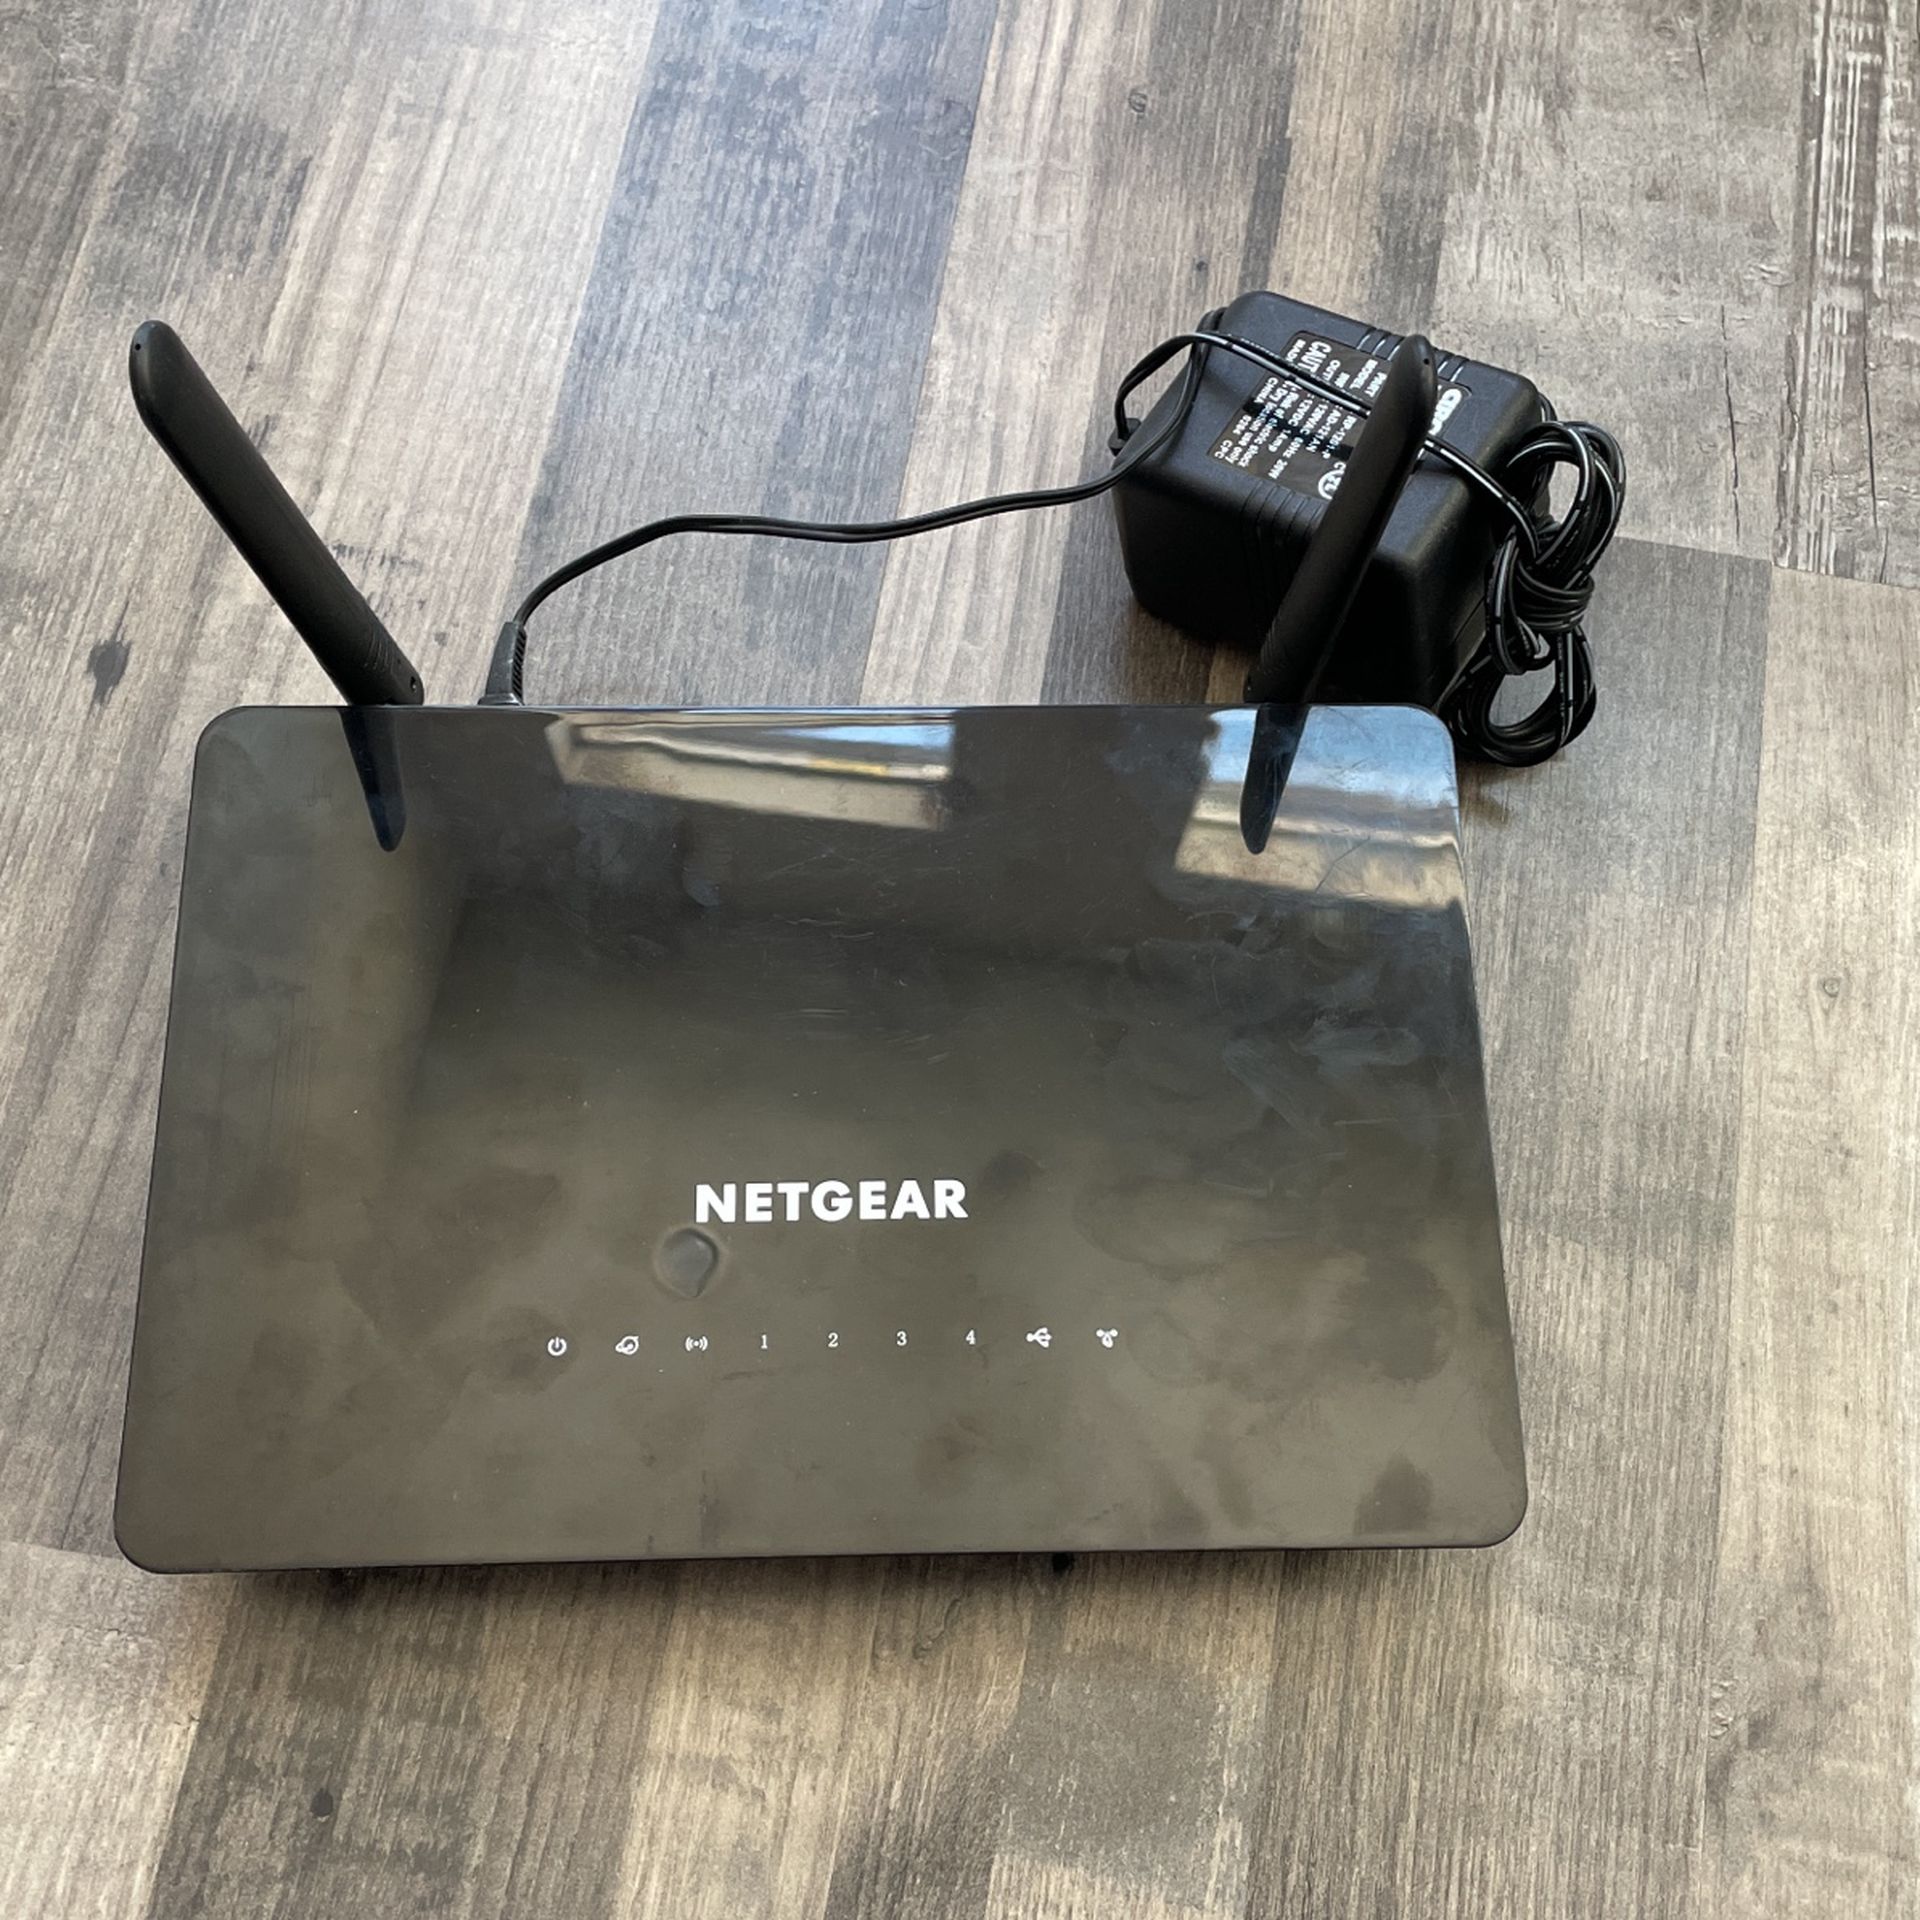 Netgear R6220 Model Wireless Router